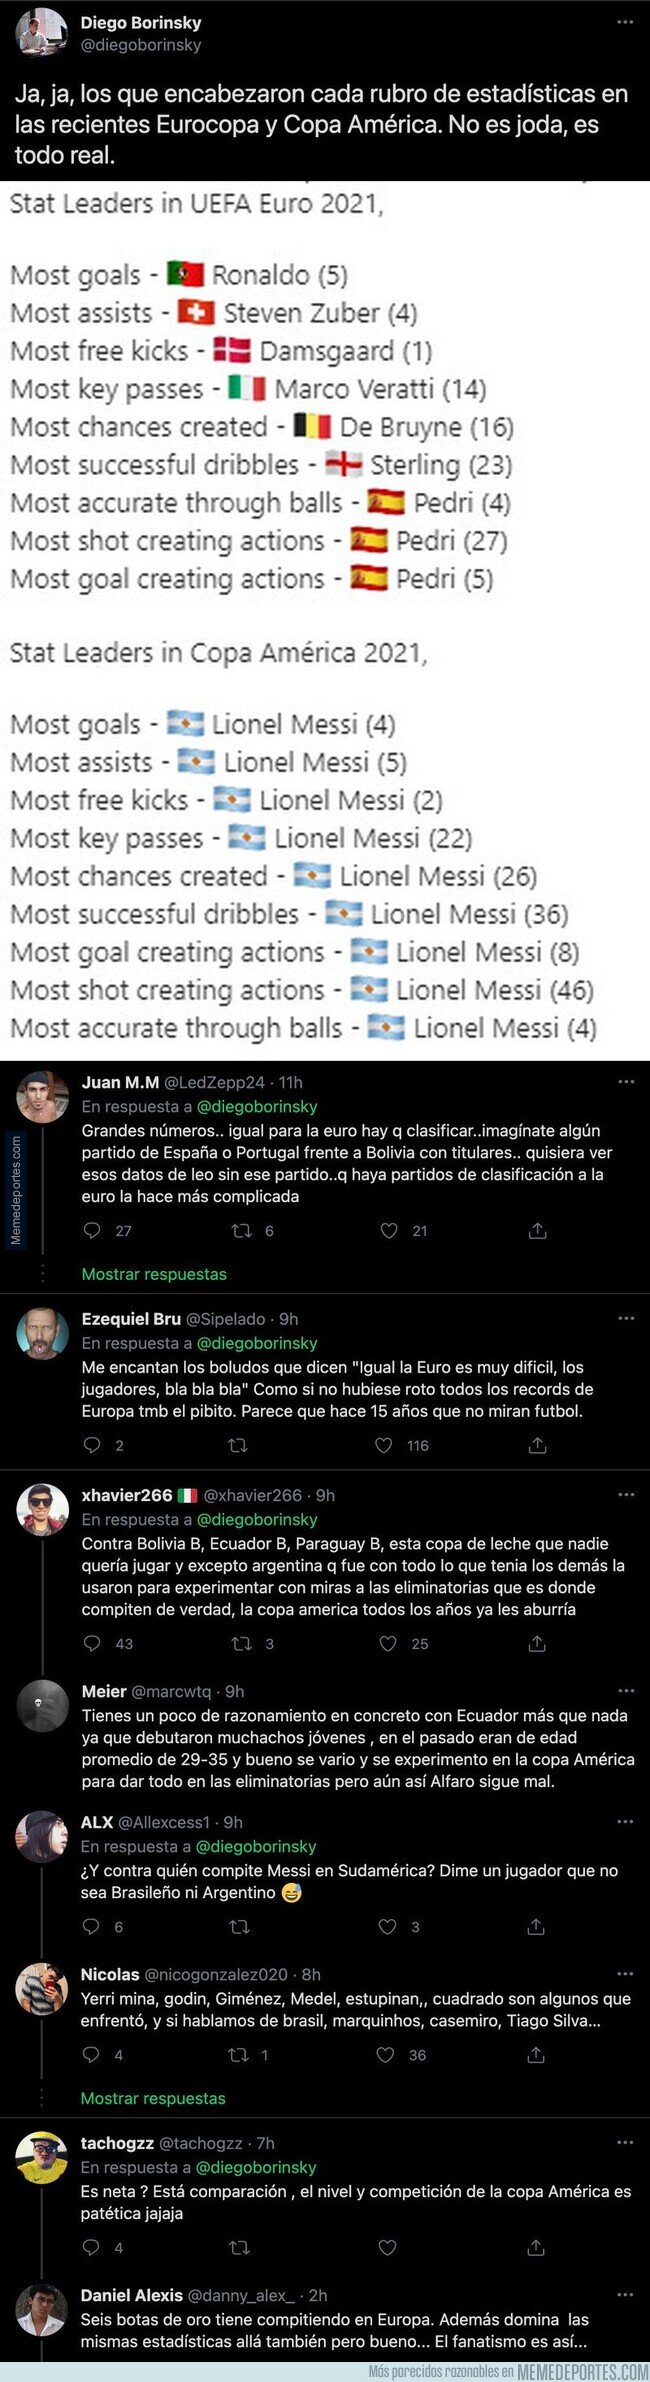 1139756 - Las demoledoras cifras de Messi en la Copa América que dejan claro que es un jugador irrepetible en la historia